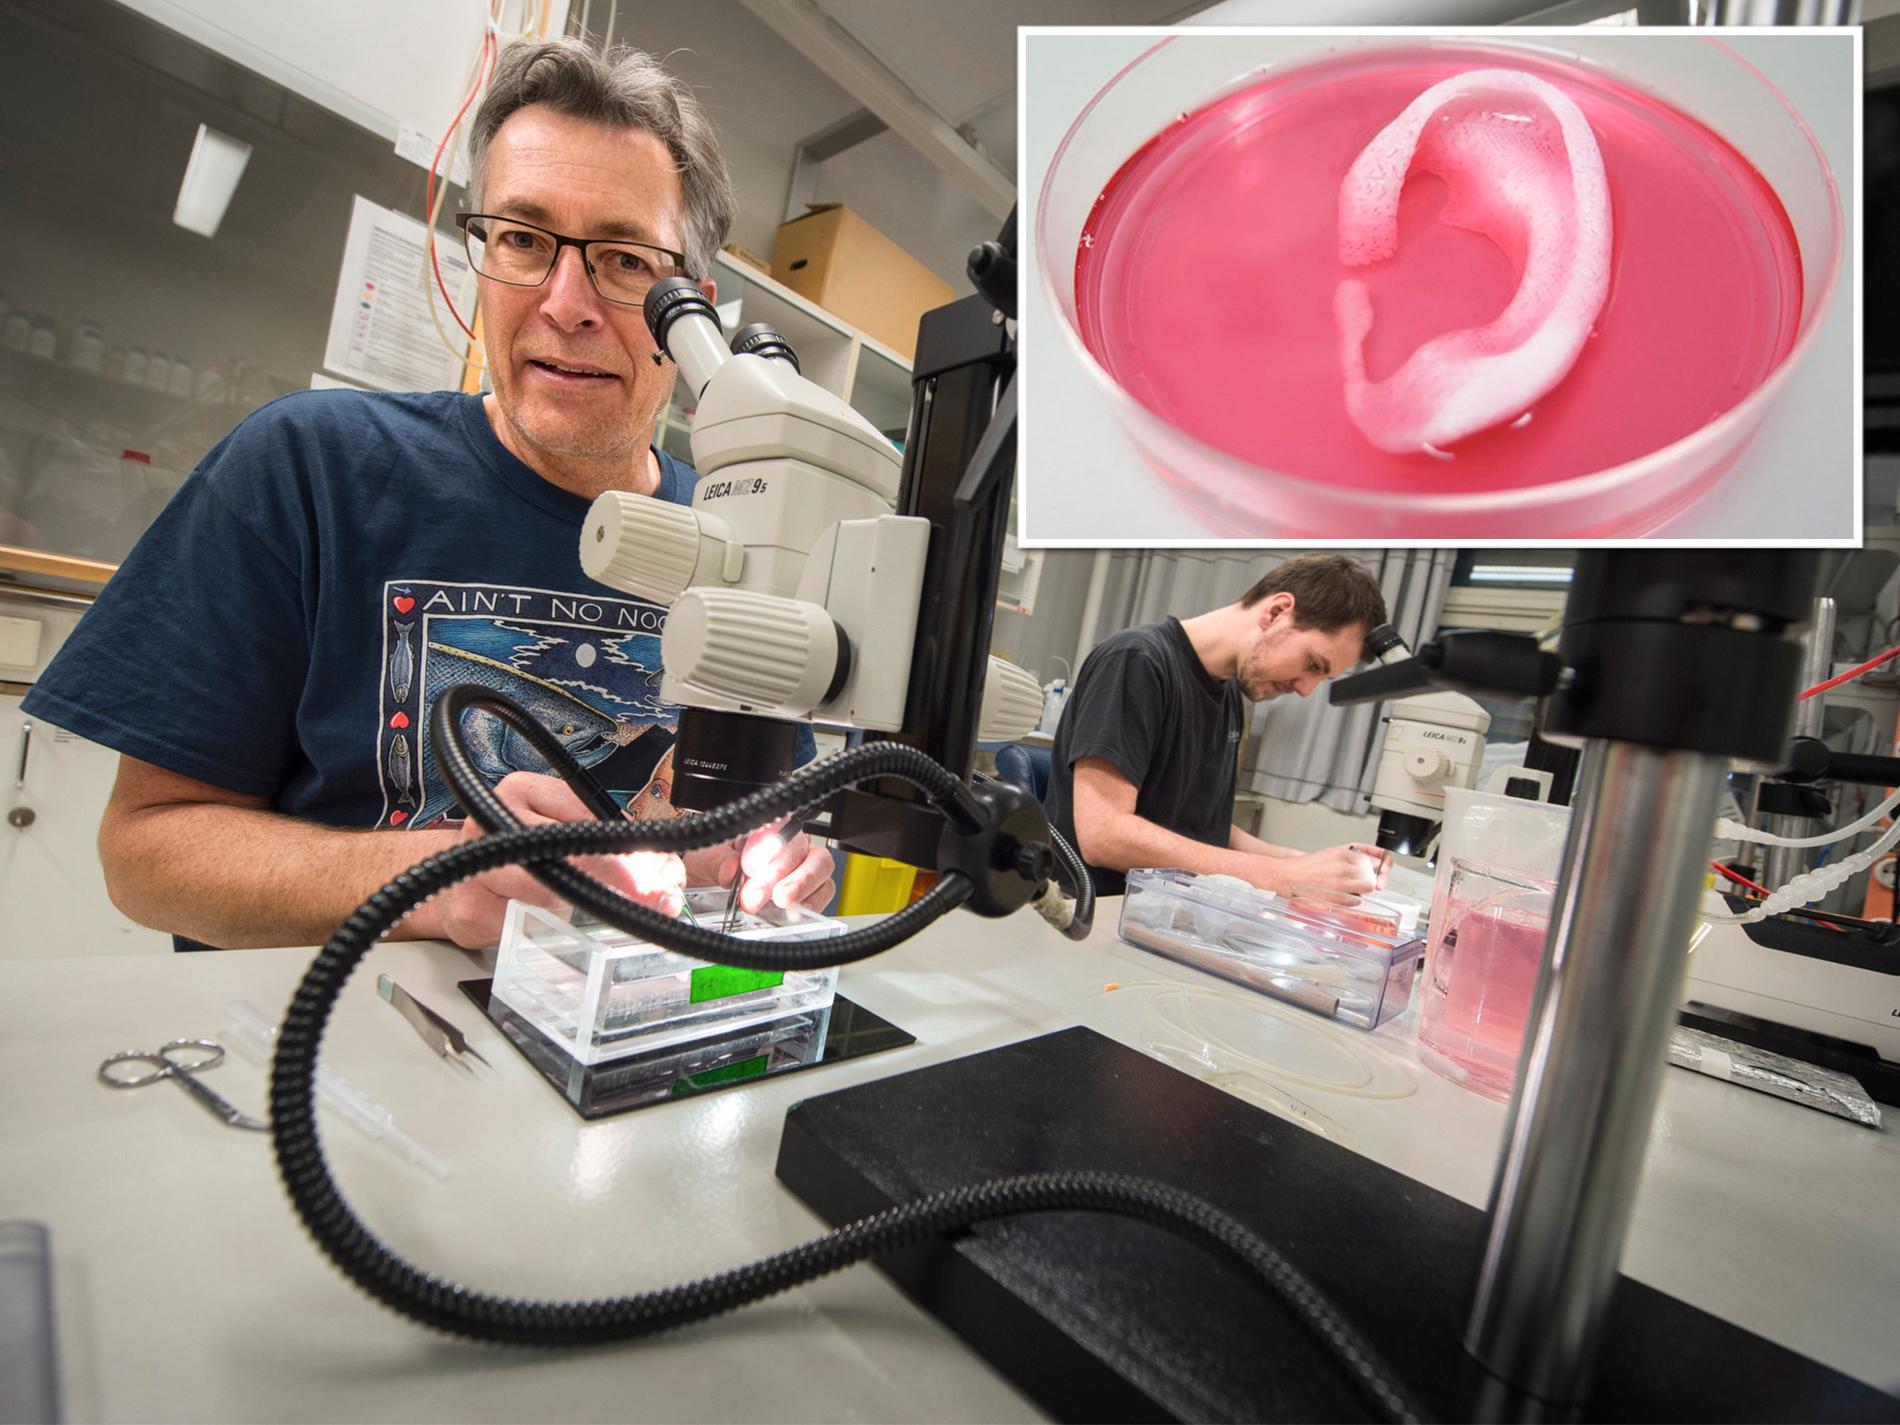 Intakt Dejlig lettelse 400 nordmenn i organkø: Kan 3D-printing av organer redde liv? - VG